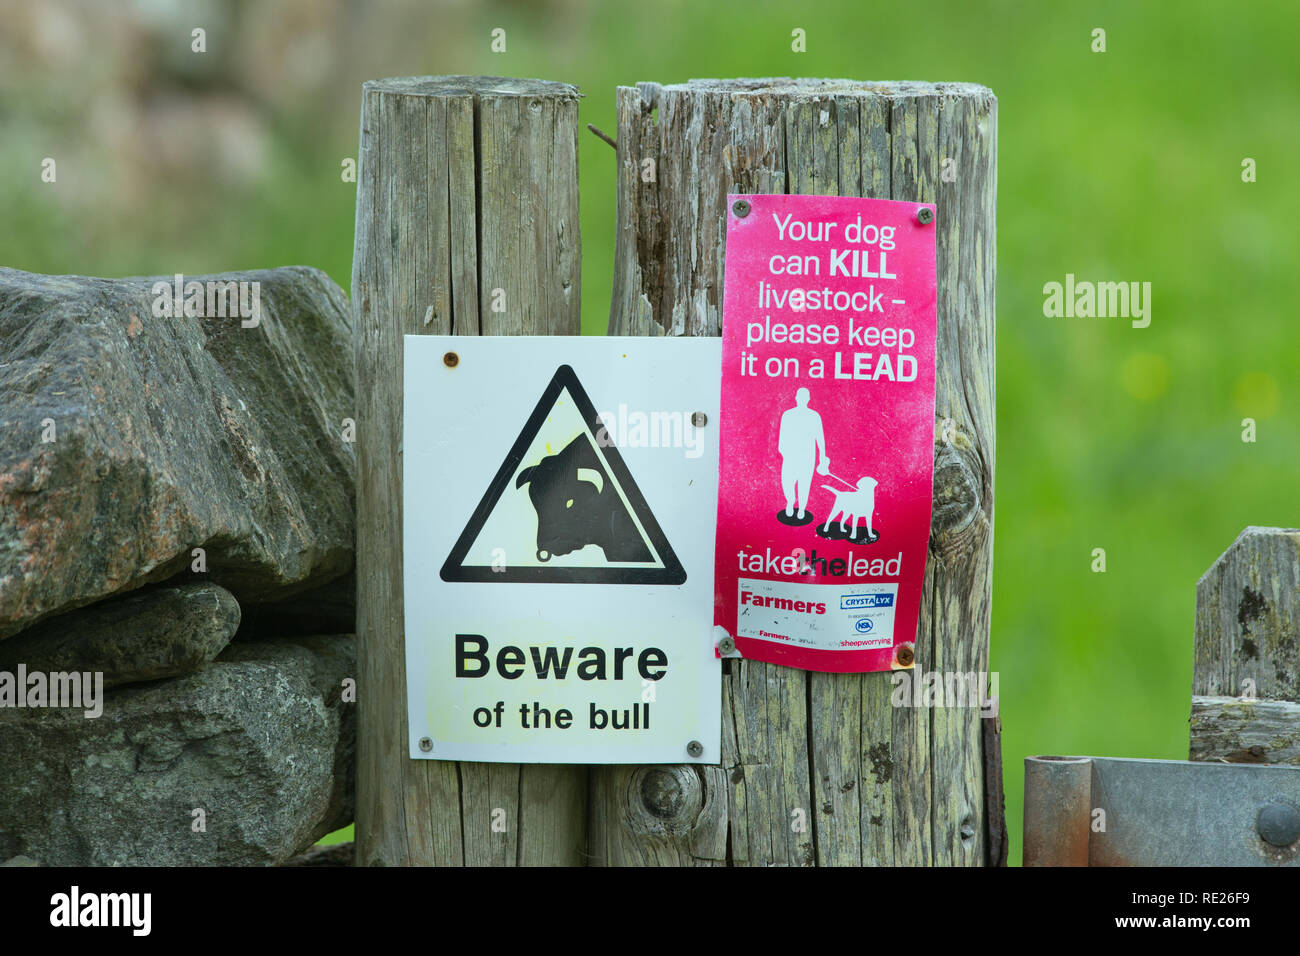 Warnzeichen. Vorsicht vor dem Stier. Ihr Hund kann töten Tiere - bitte an der Leine, die Spaziergänger, Wanderer, Wanderer halten, Hundebesitzer, über den Fußweg. Die Insel Iona, Inneren Hebriden. Westküste von Schottland. ​ Stockfoto